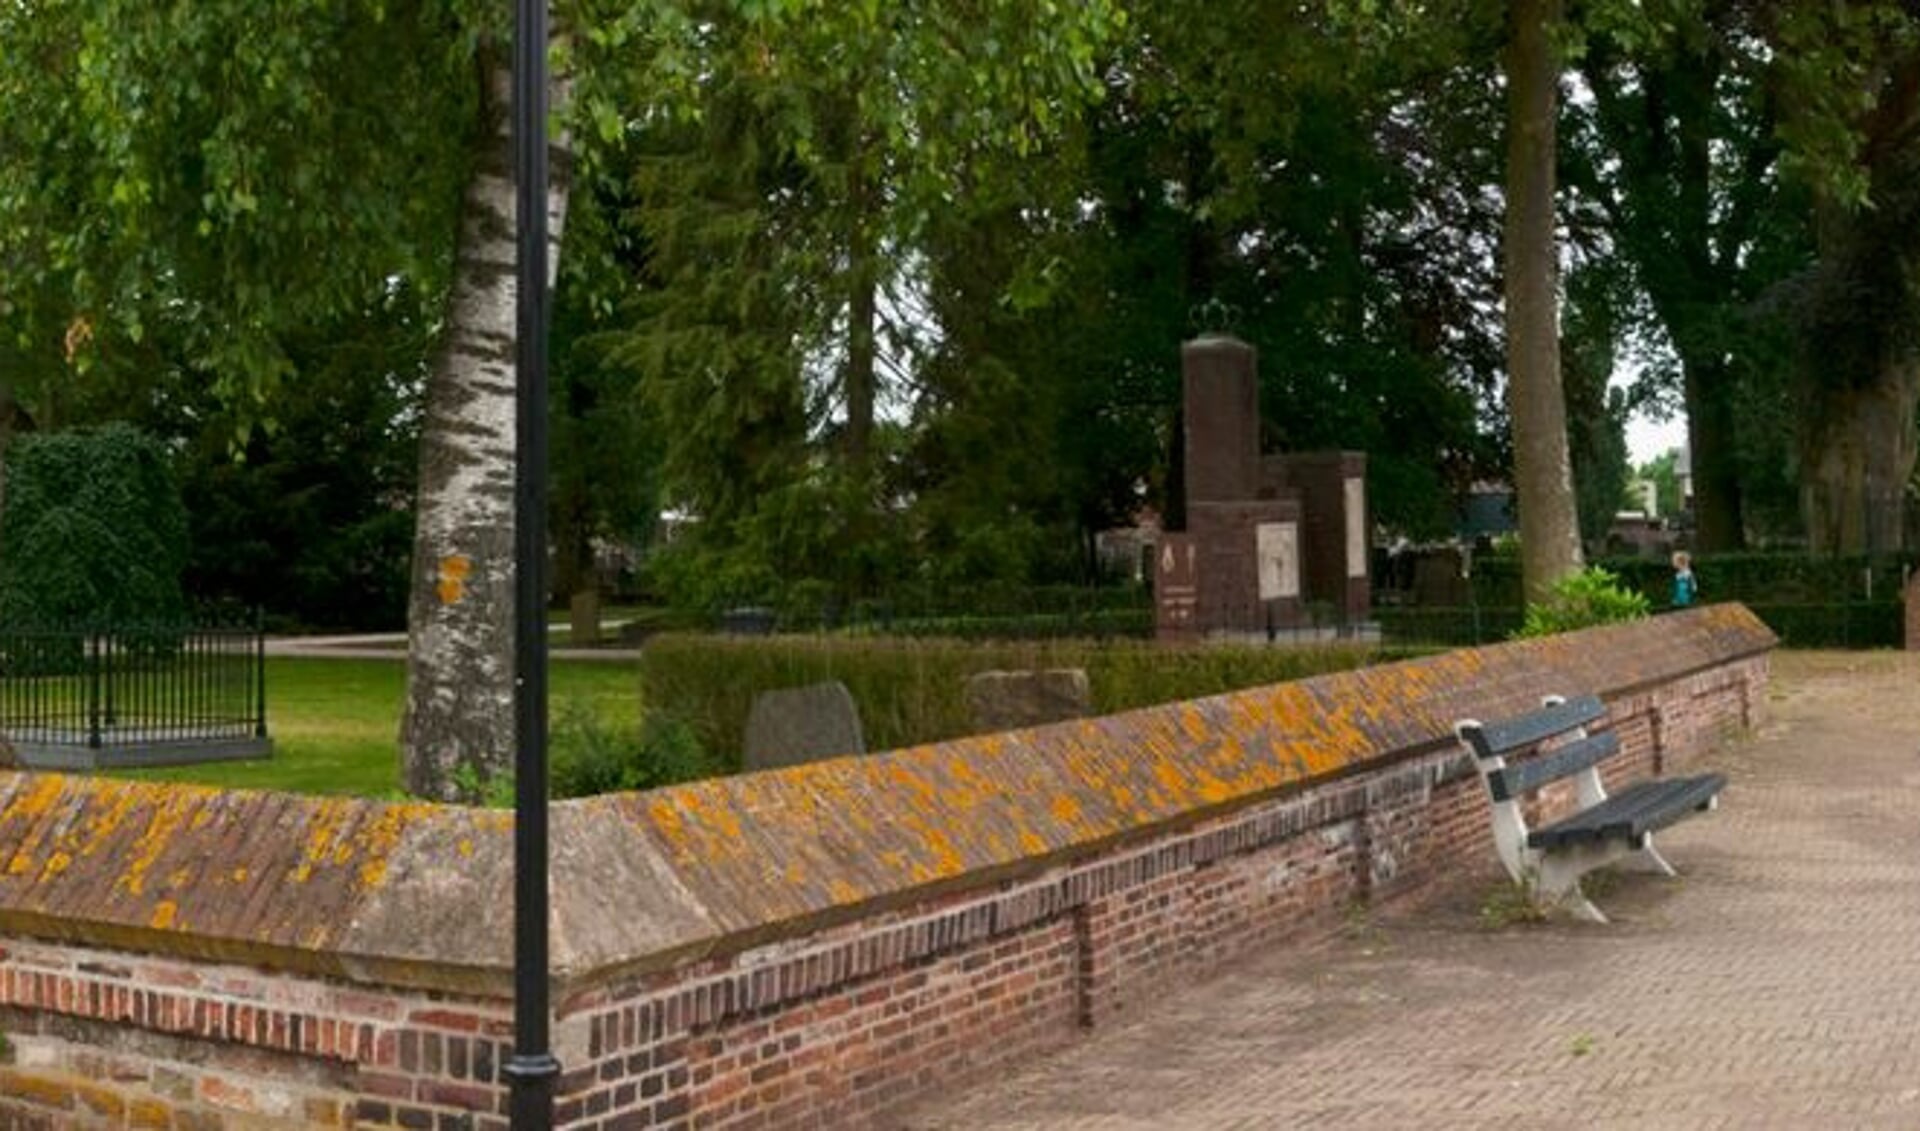 RIJSSEN - De website van de Oude Begraafplaats op de hoek Lentfersweg-Oranjestraat is gereed.